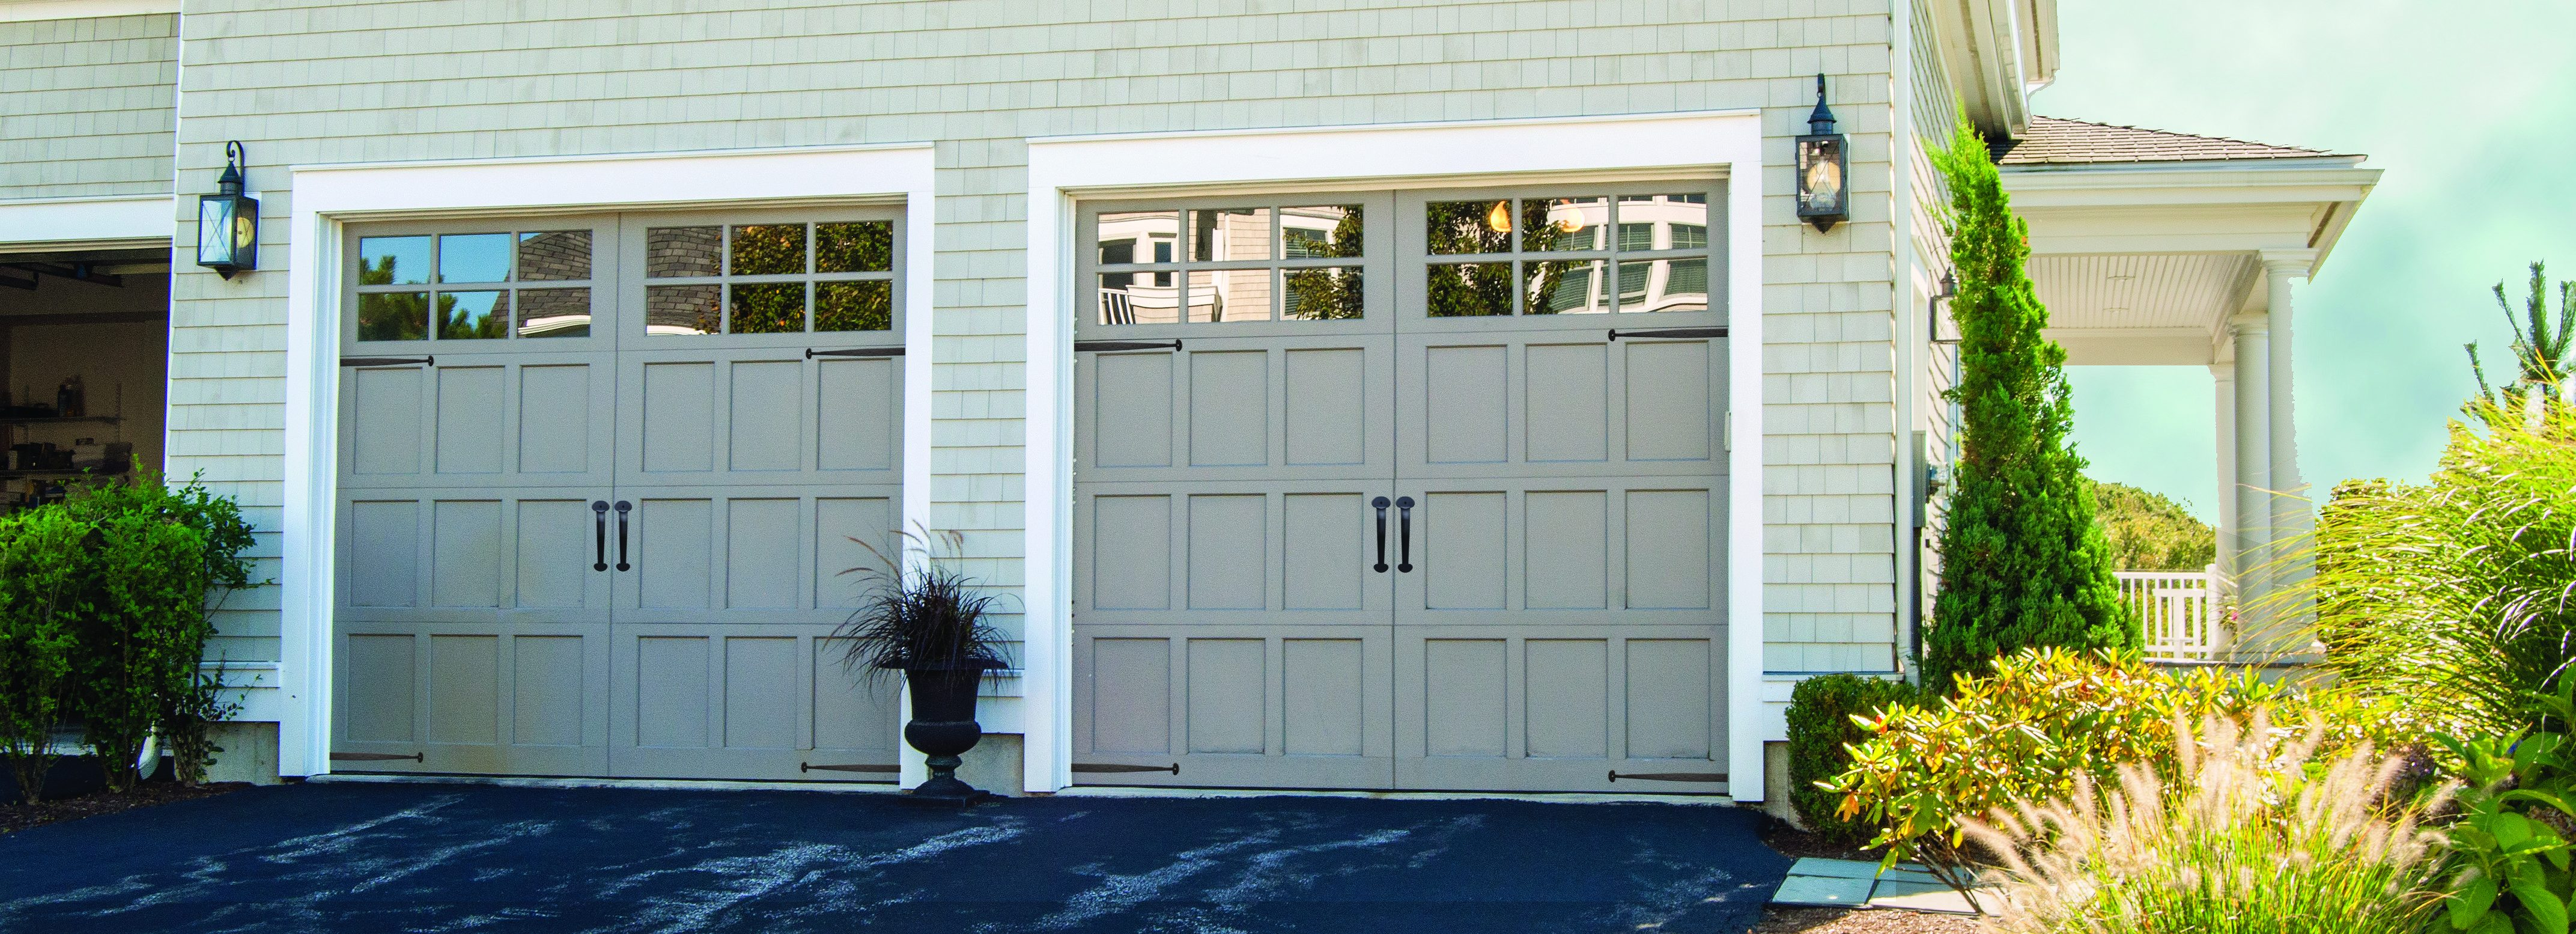 Garage Door Installation Repair In Danvers Ma within size 4288 X 1554